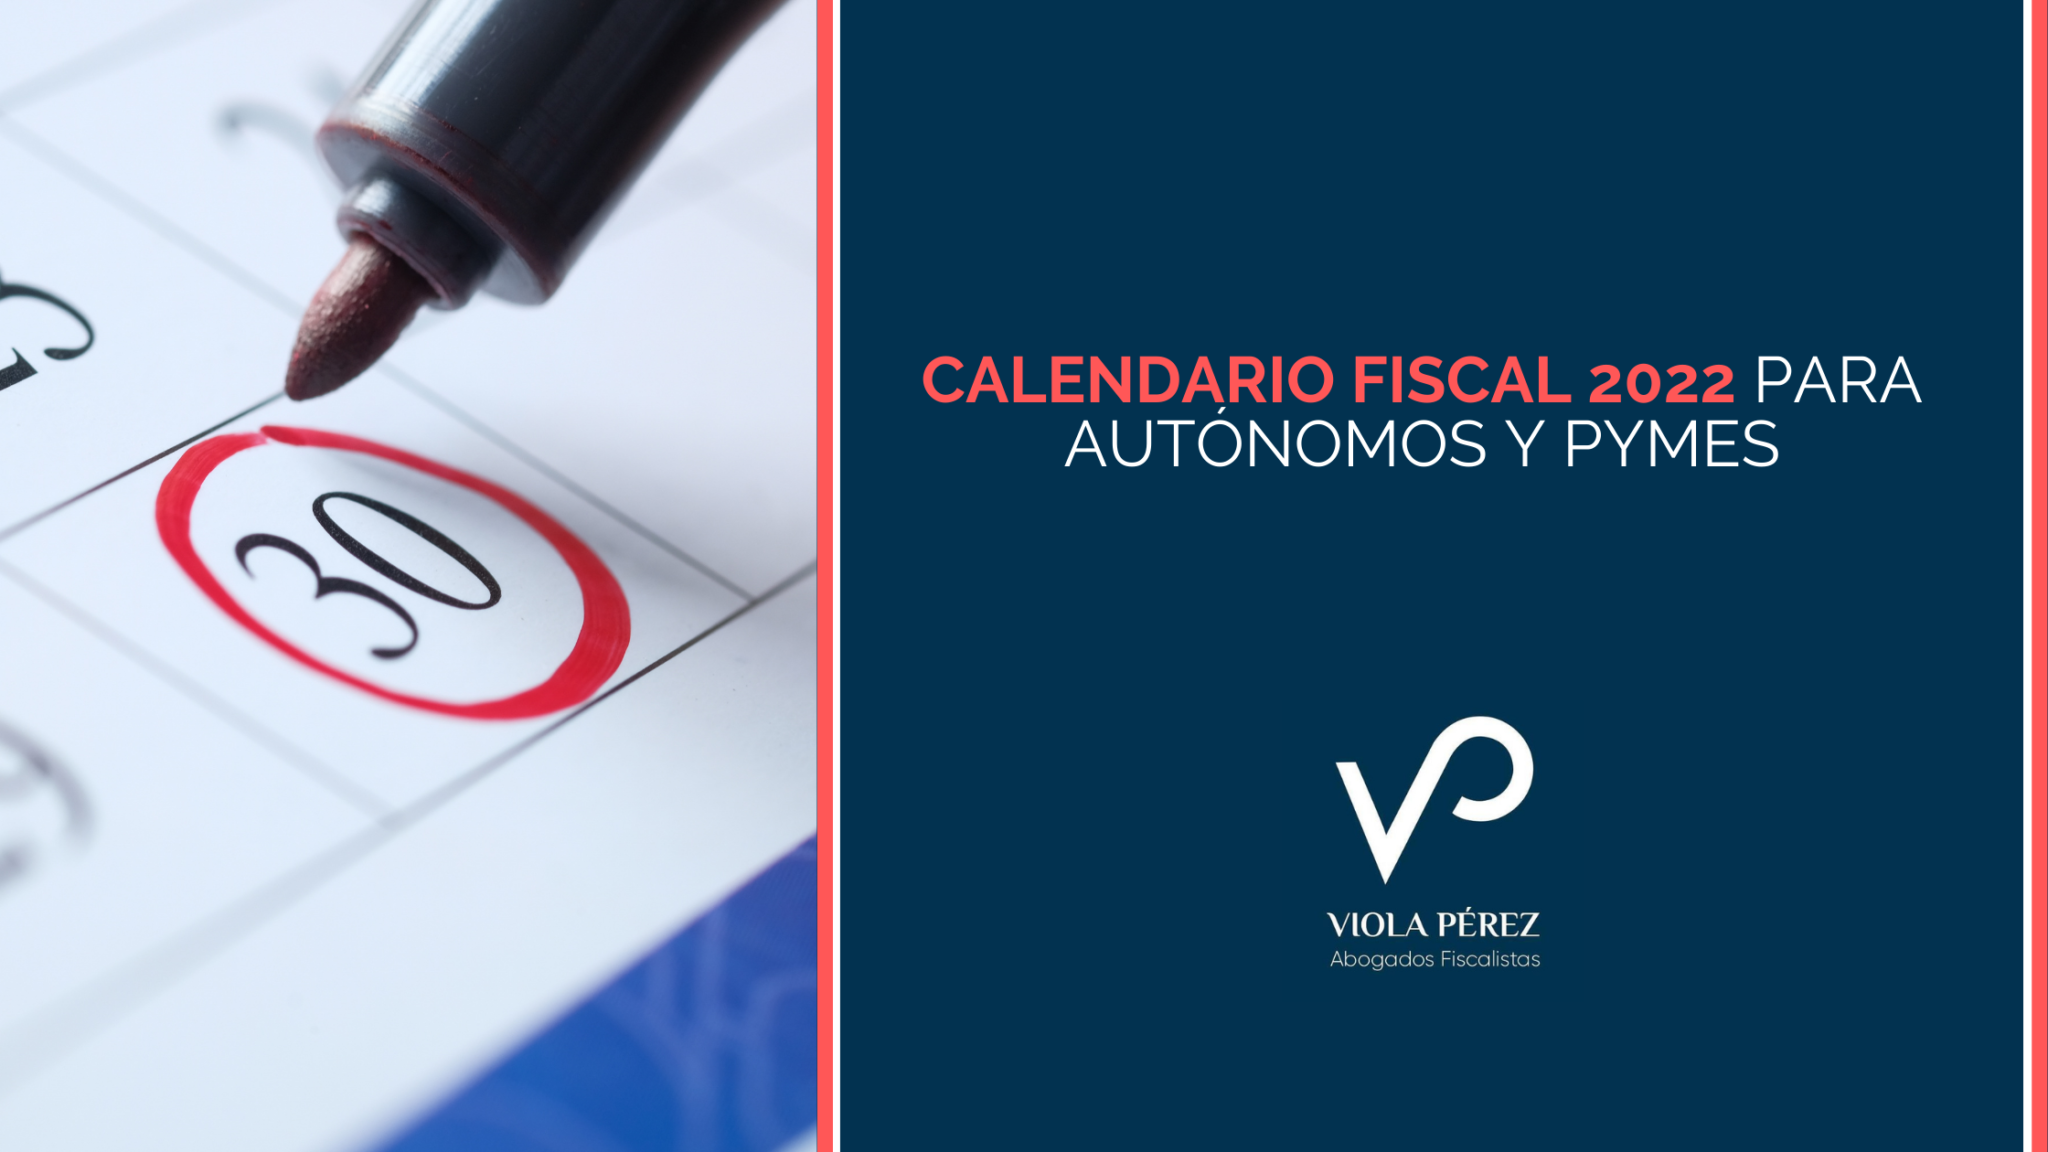 Calendario fiscal 2022 para autónomos y pymes